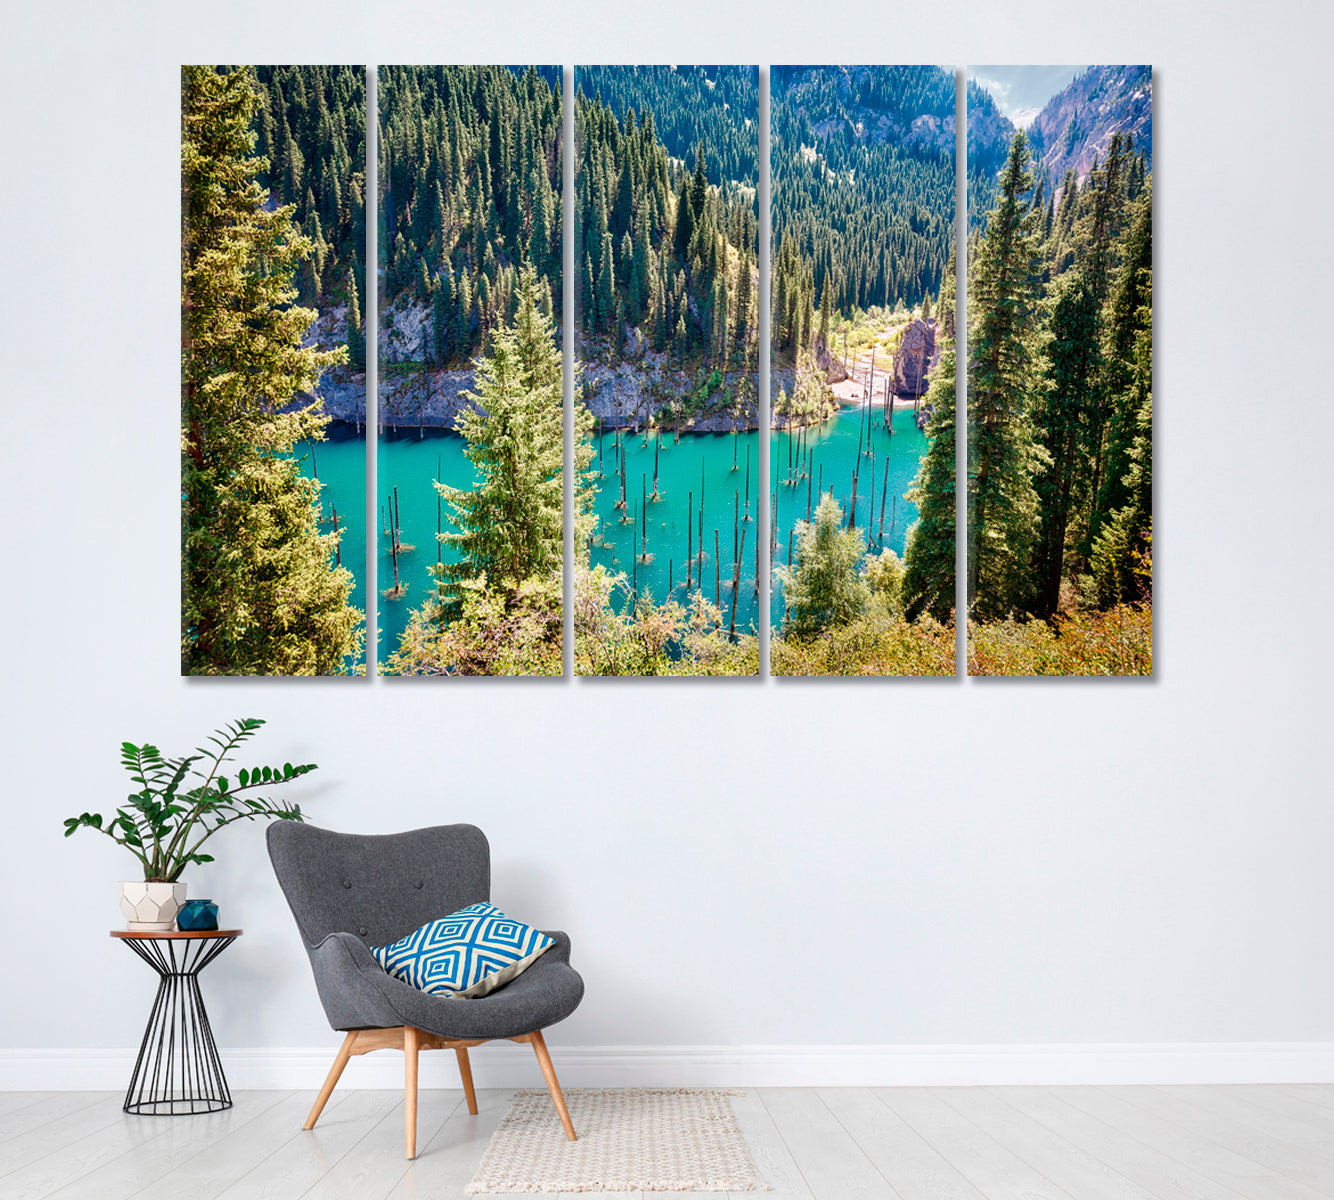 Kaindy Lake Kazakhstan Canvas Print ArtLexy 5 Panels 36"x24" inches 